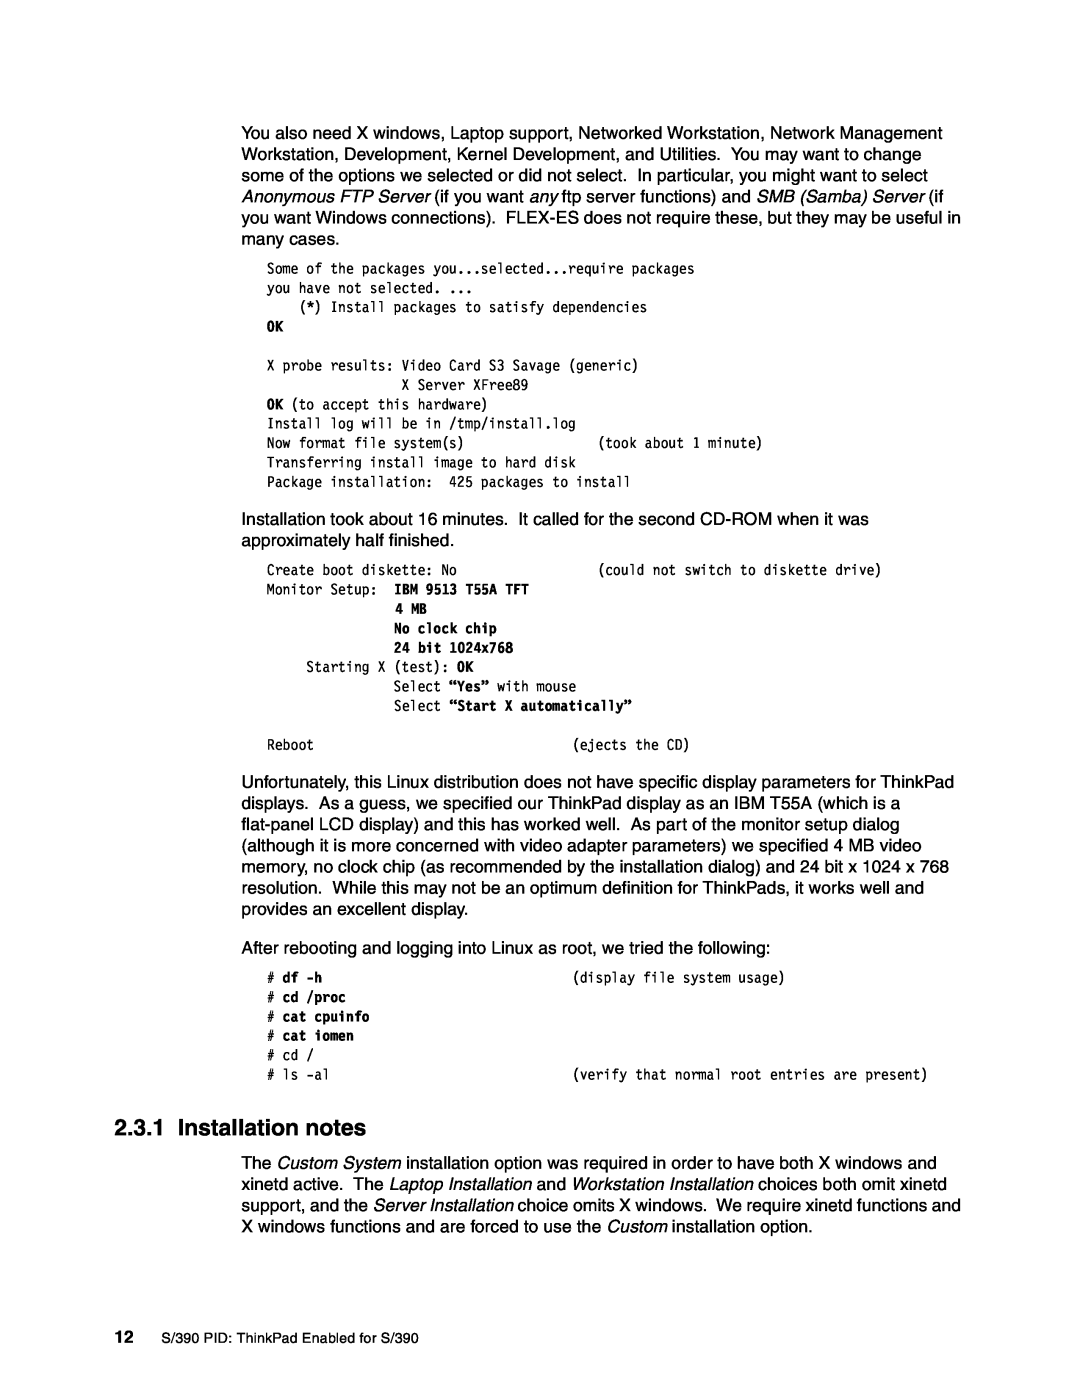 IBM s/390 manual Installation notes 